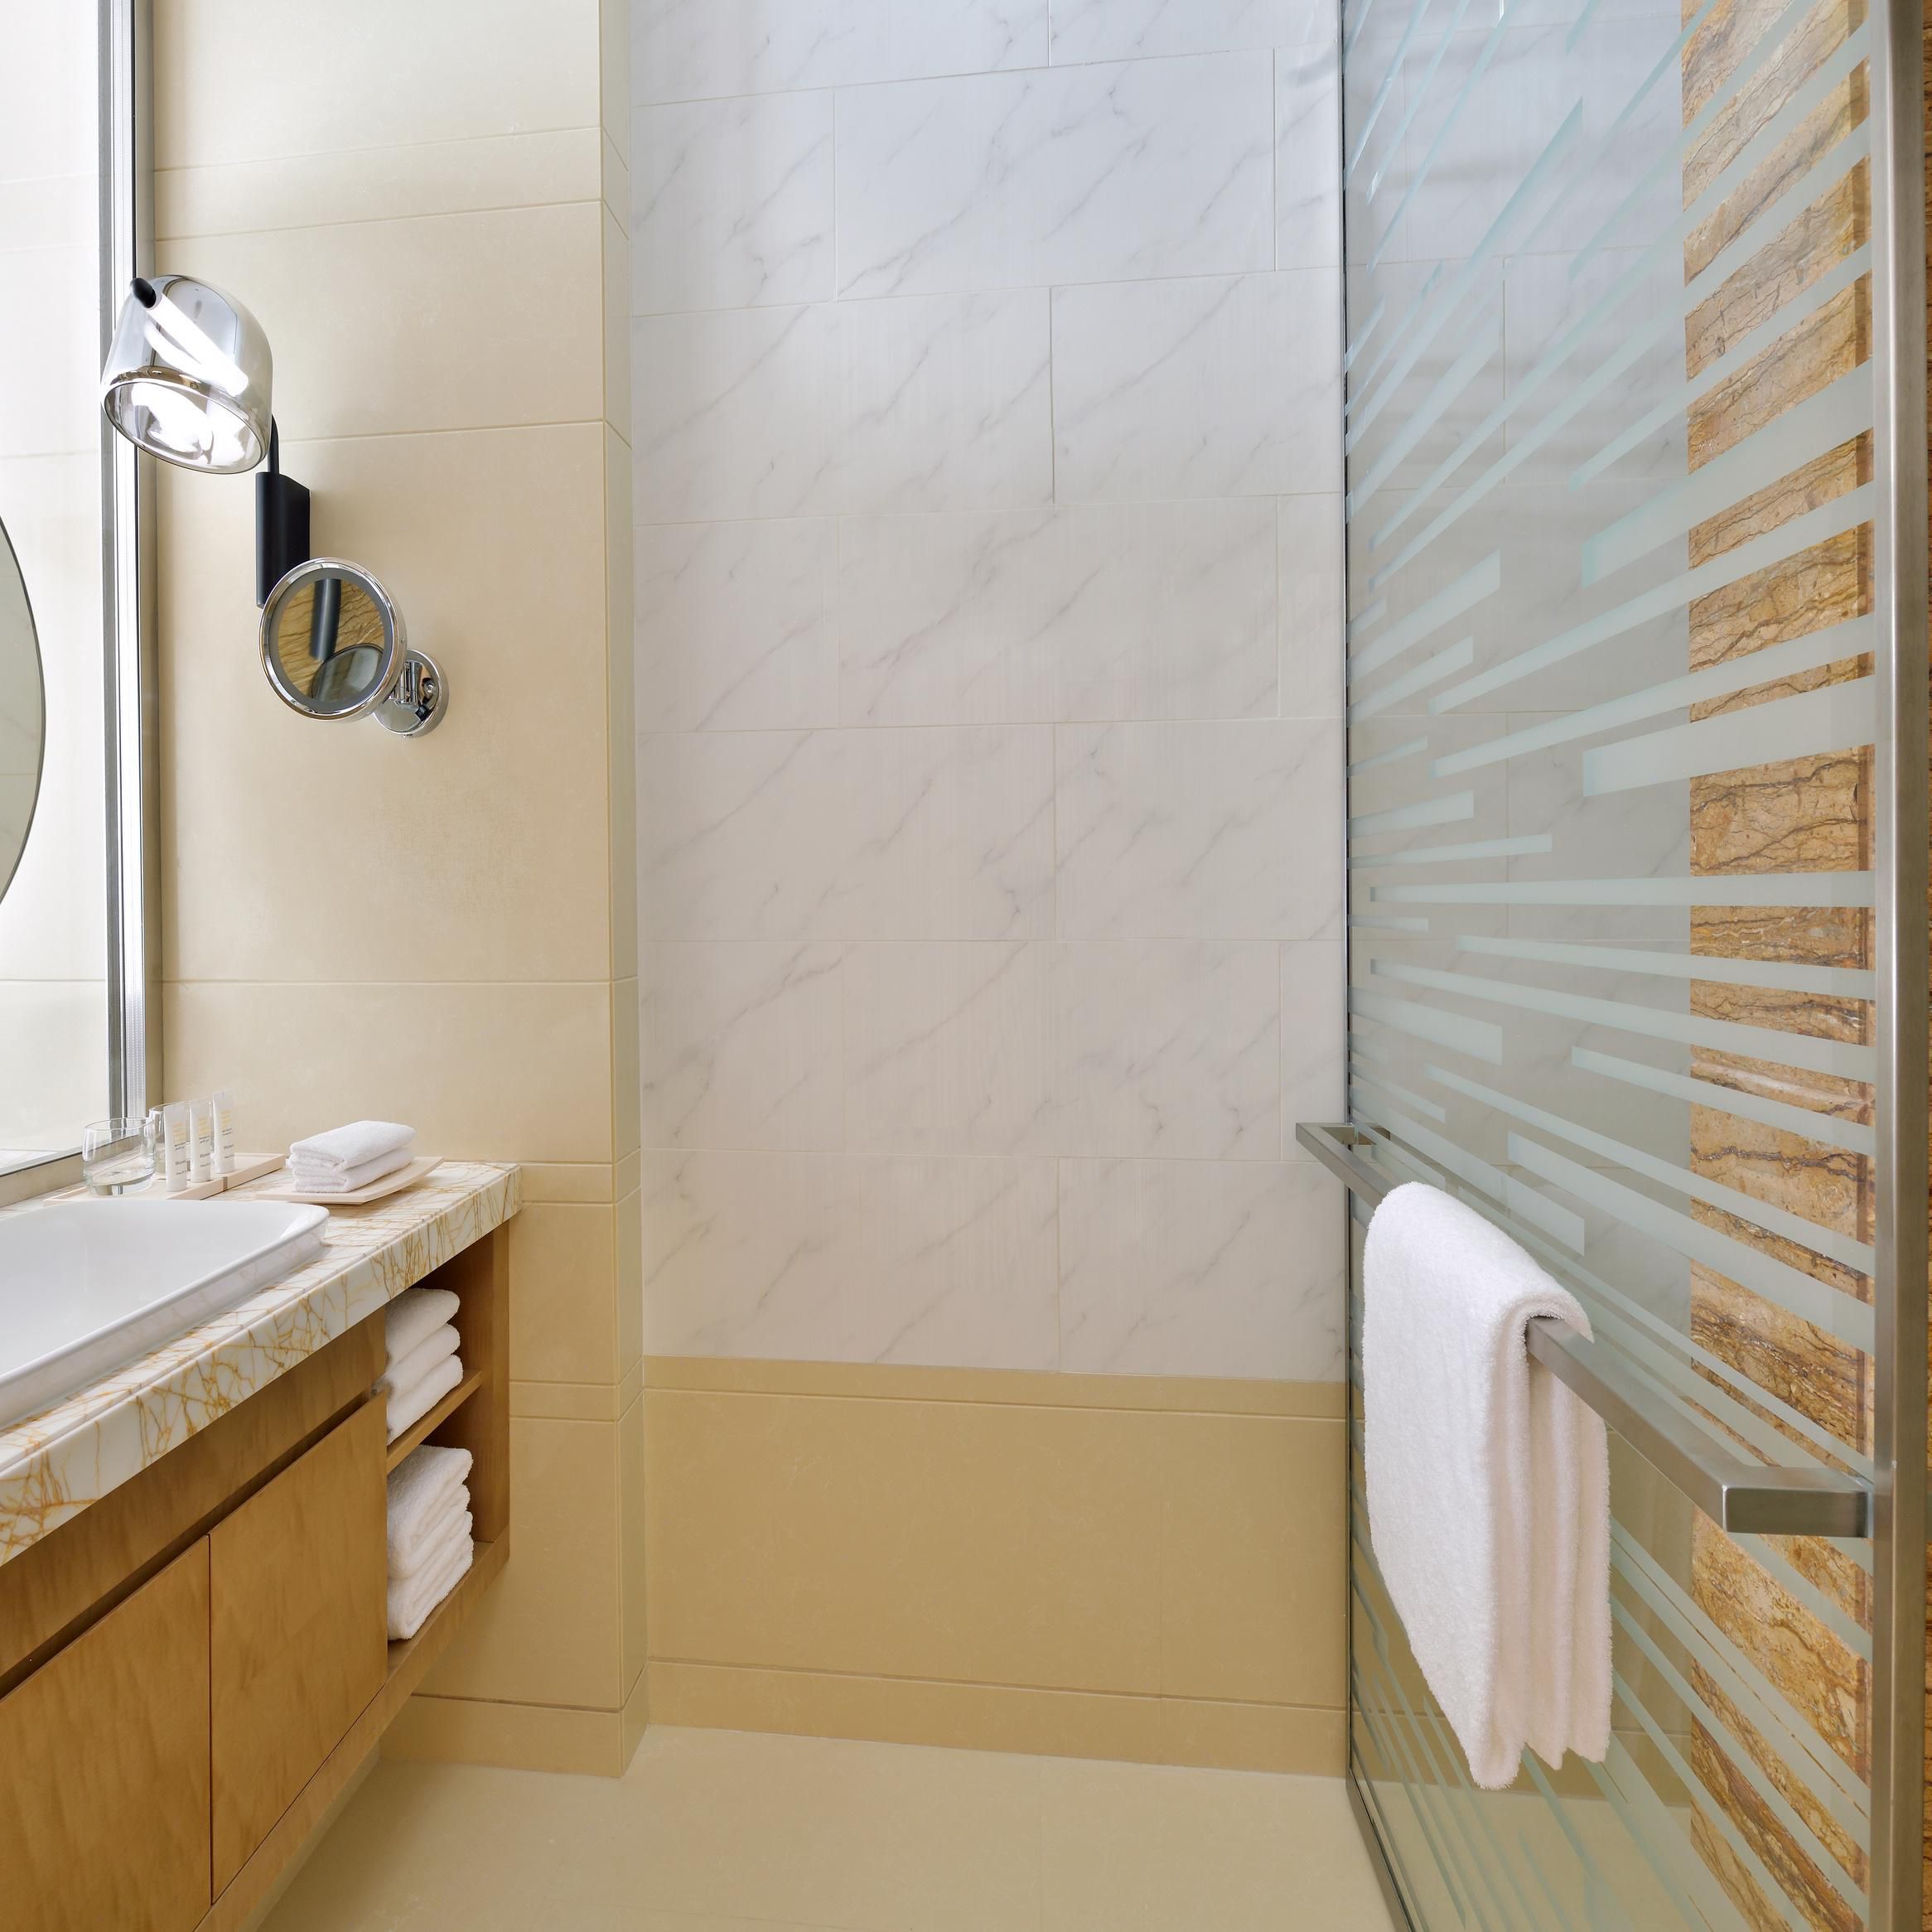 Functional modern bathroom big mirror, toiletries and clean towels